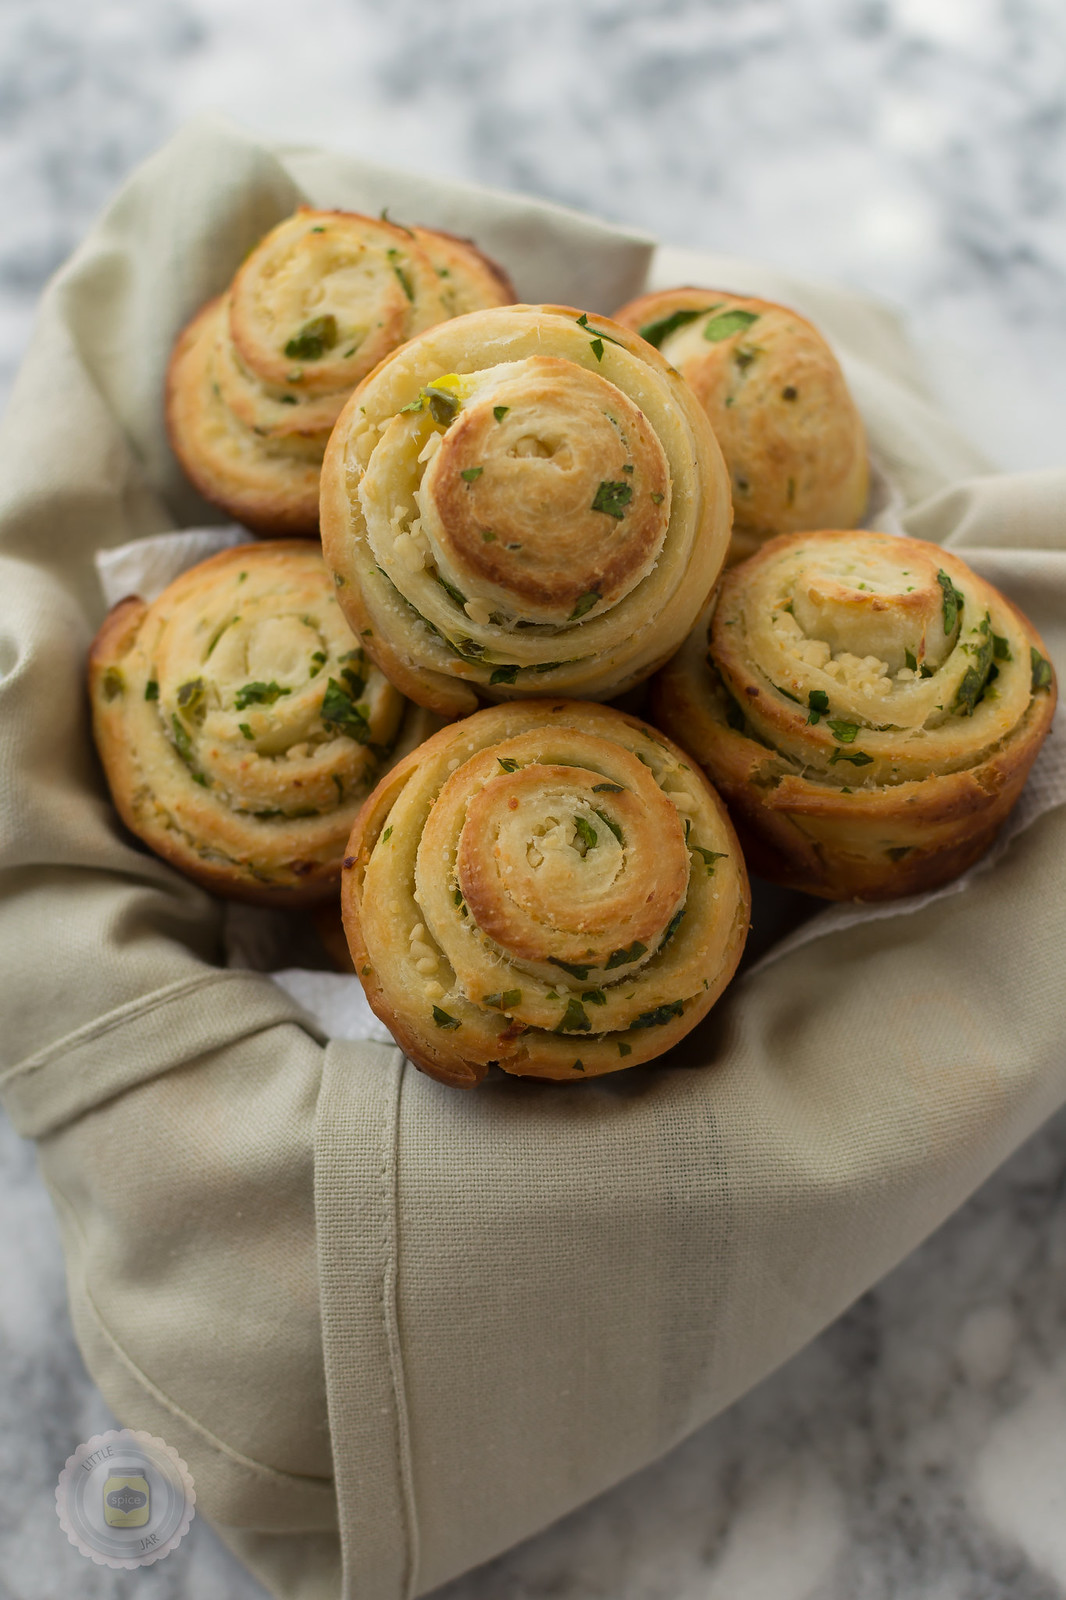 jalapeno parmesan swirl bread rolls in towel lined basket showcasing swirls